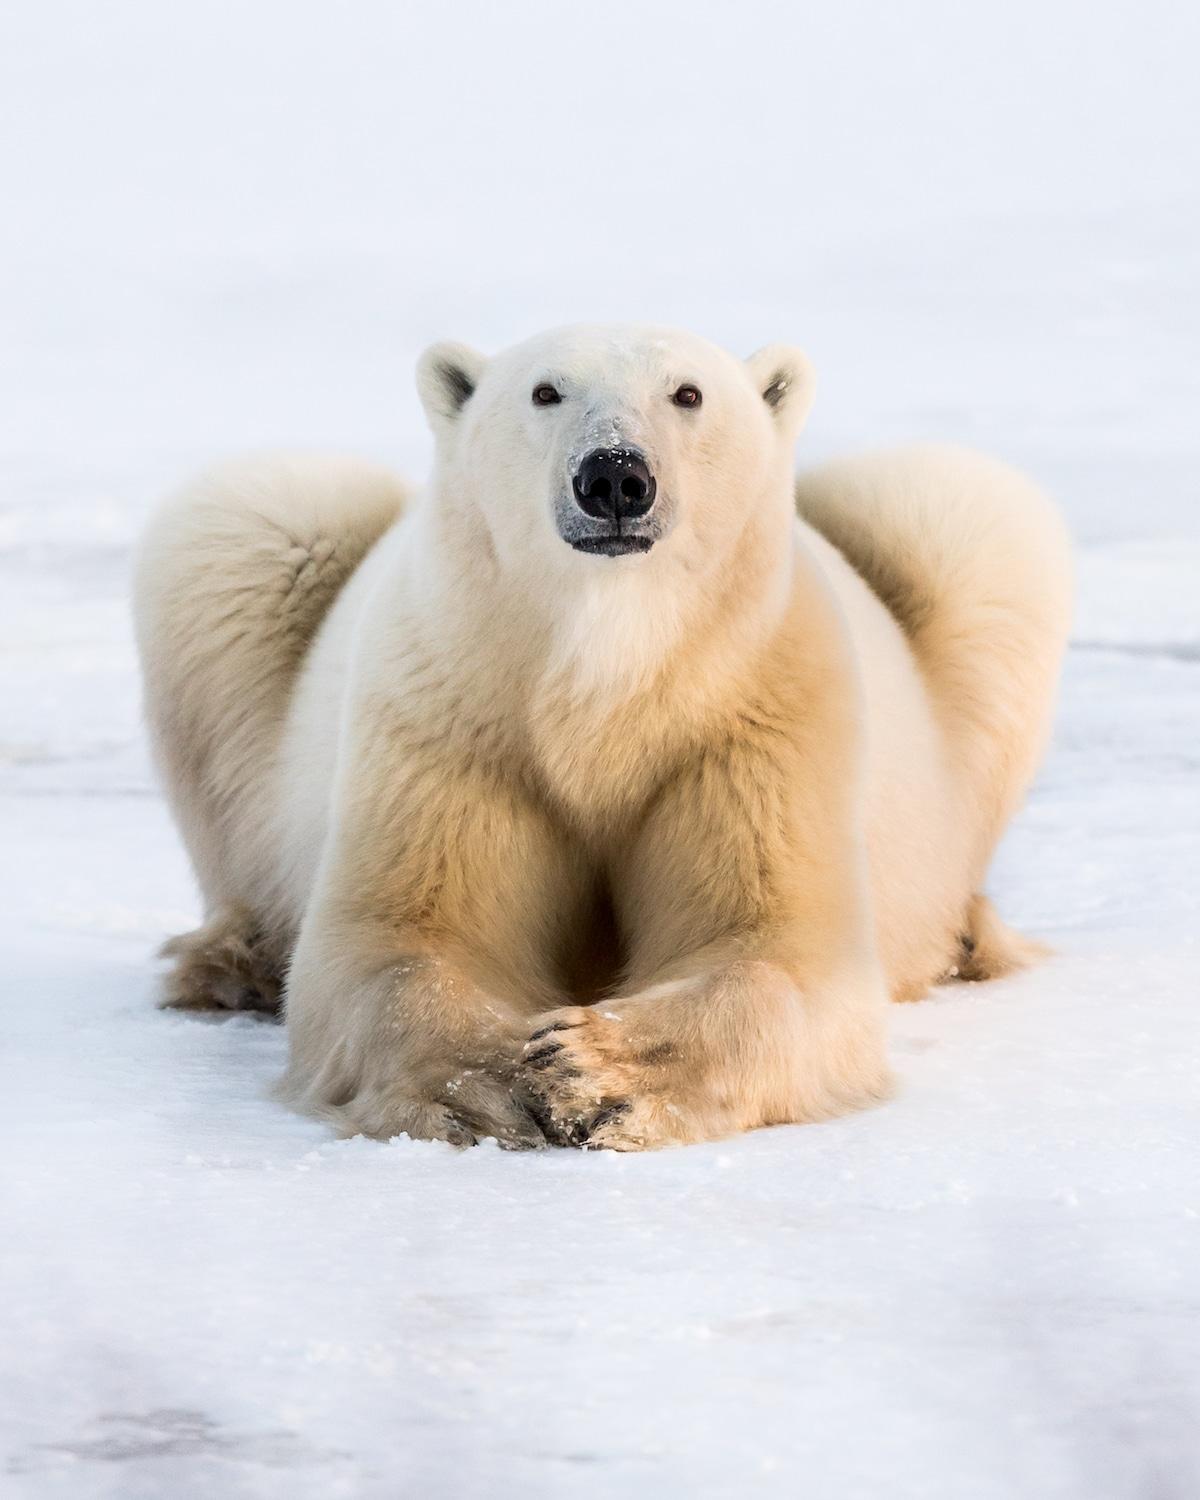 天冷了~好想要一个软萌萌暖呼呼的「北极熊抱」呀! 